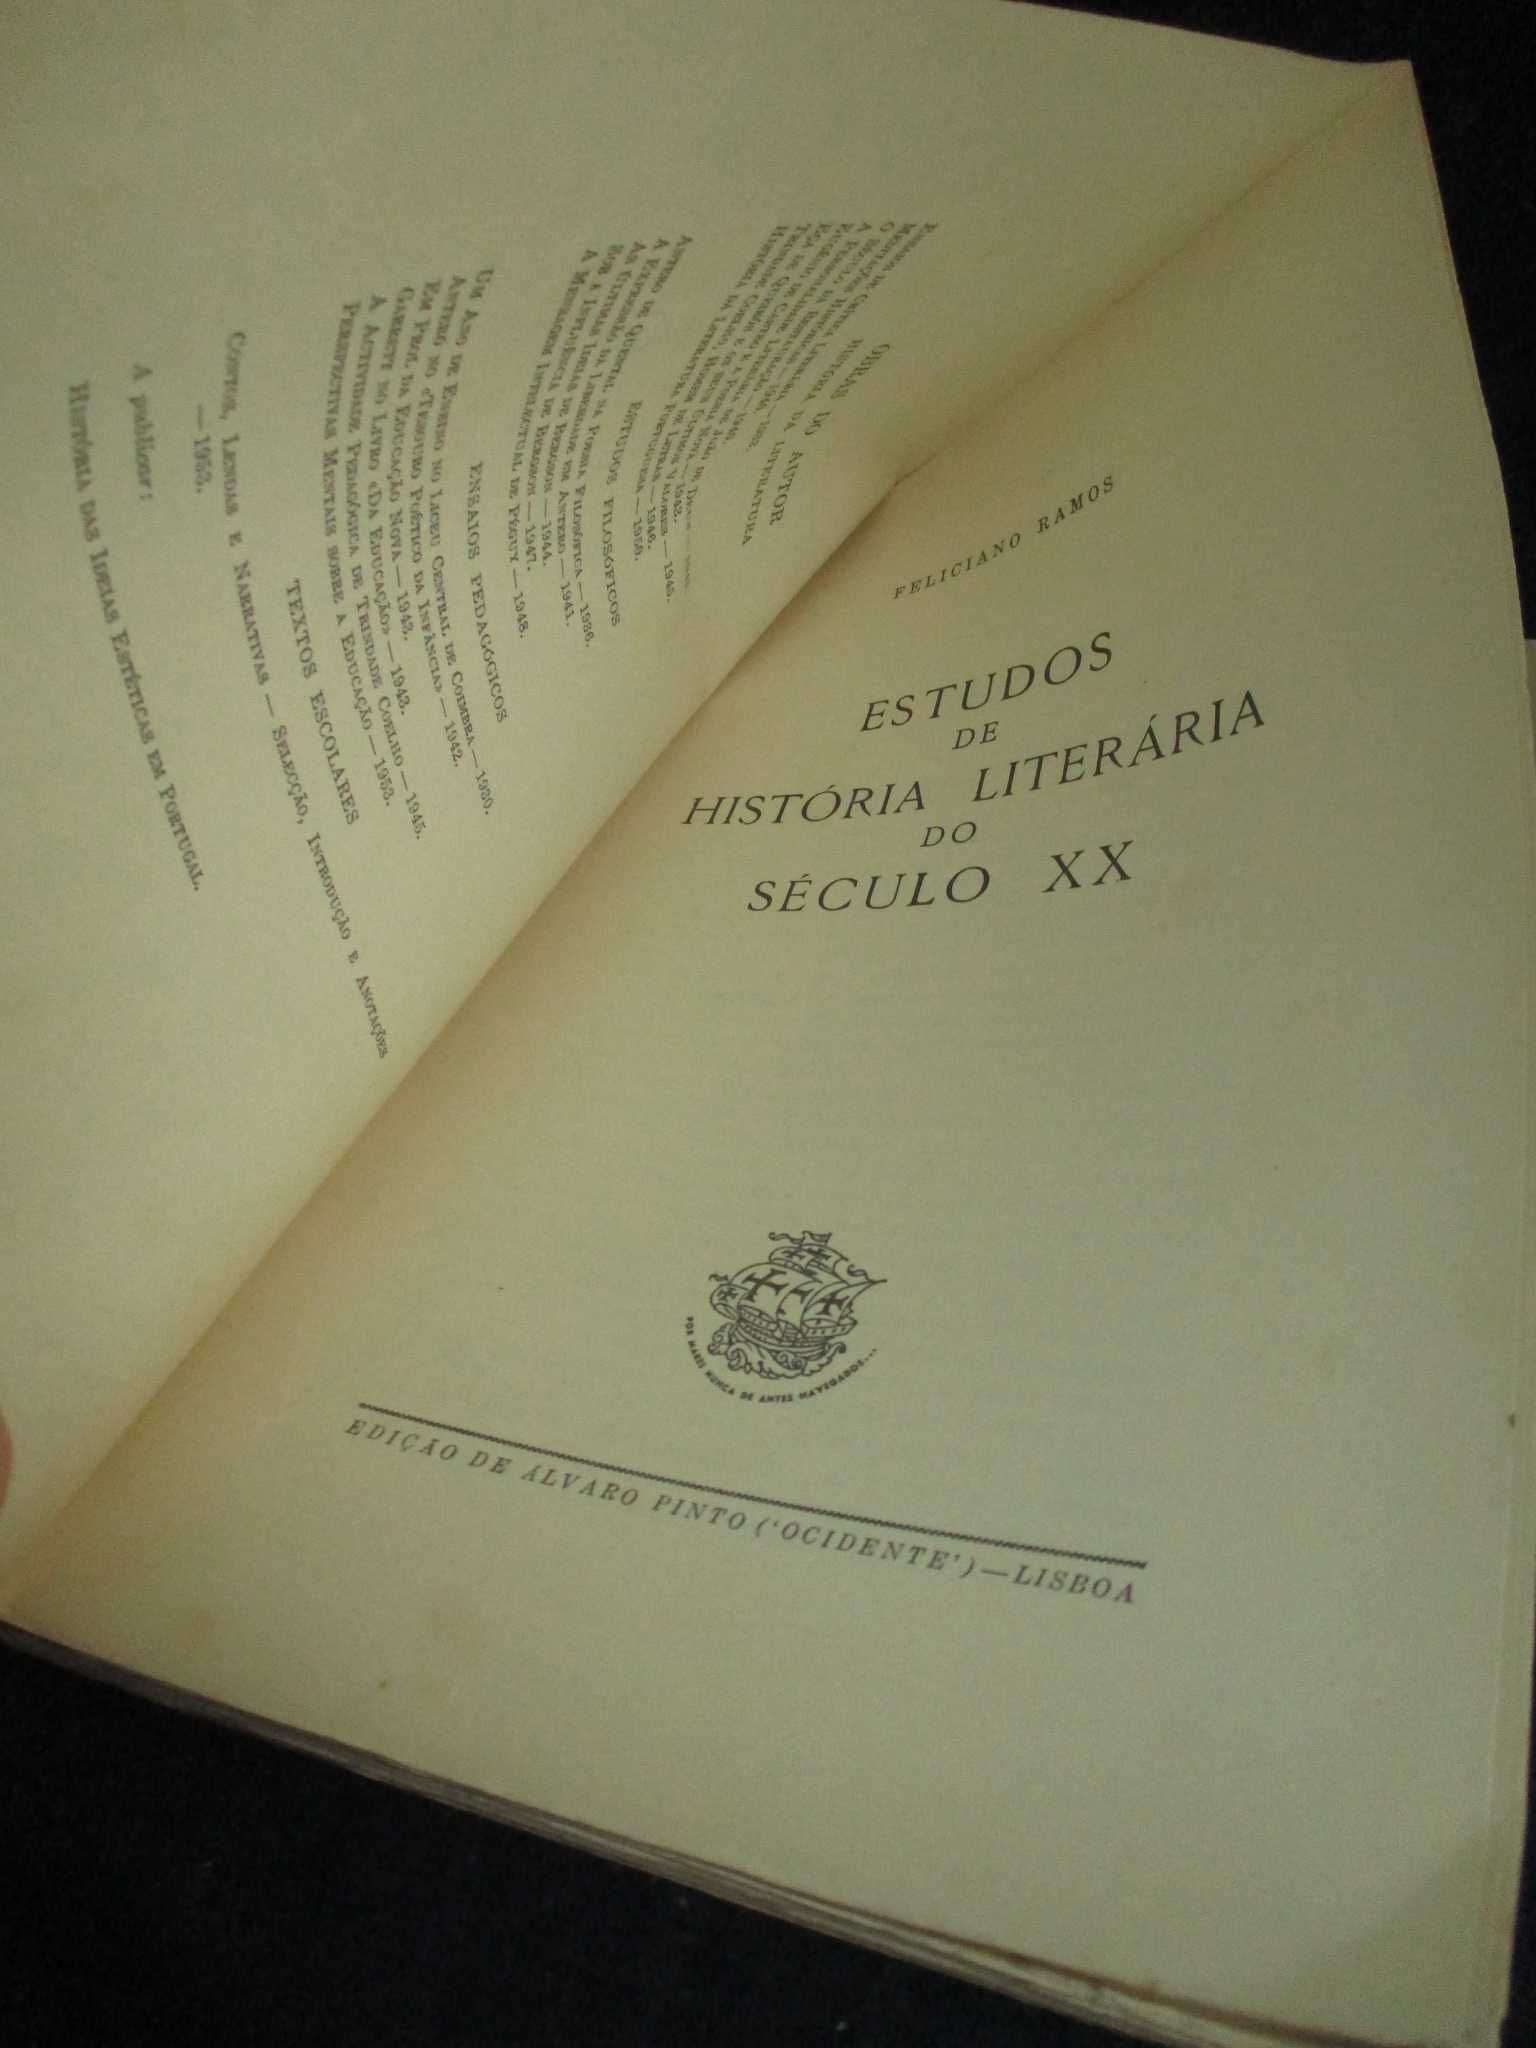 Livro Estudos de História Literária do Século XX Feliciano Ramos Autog